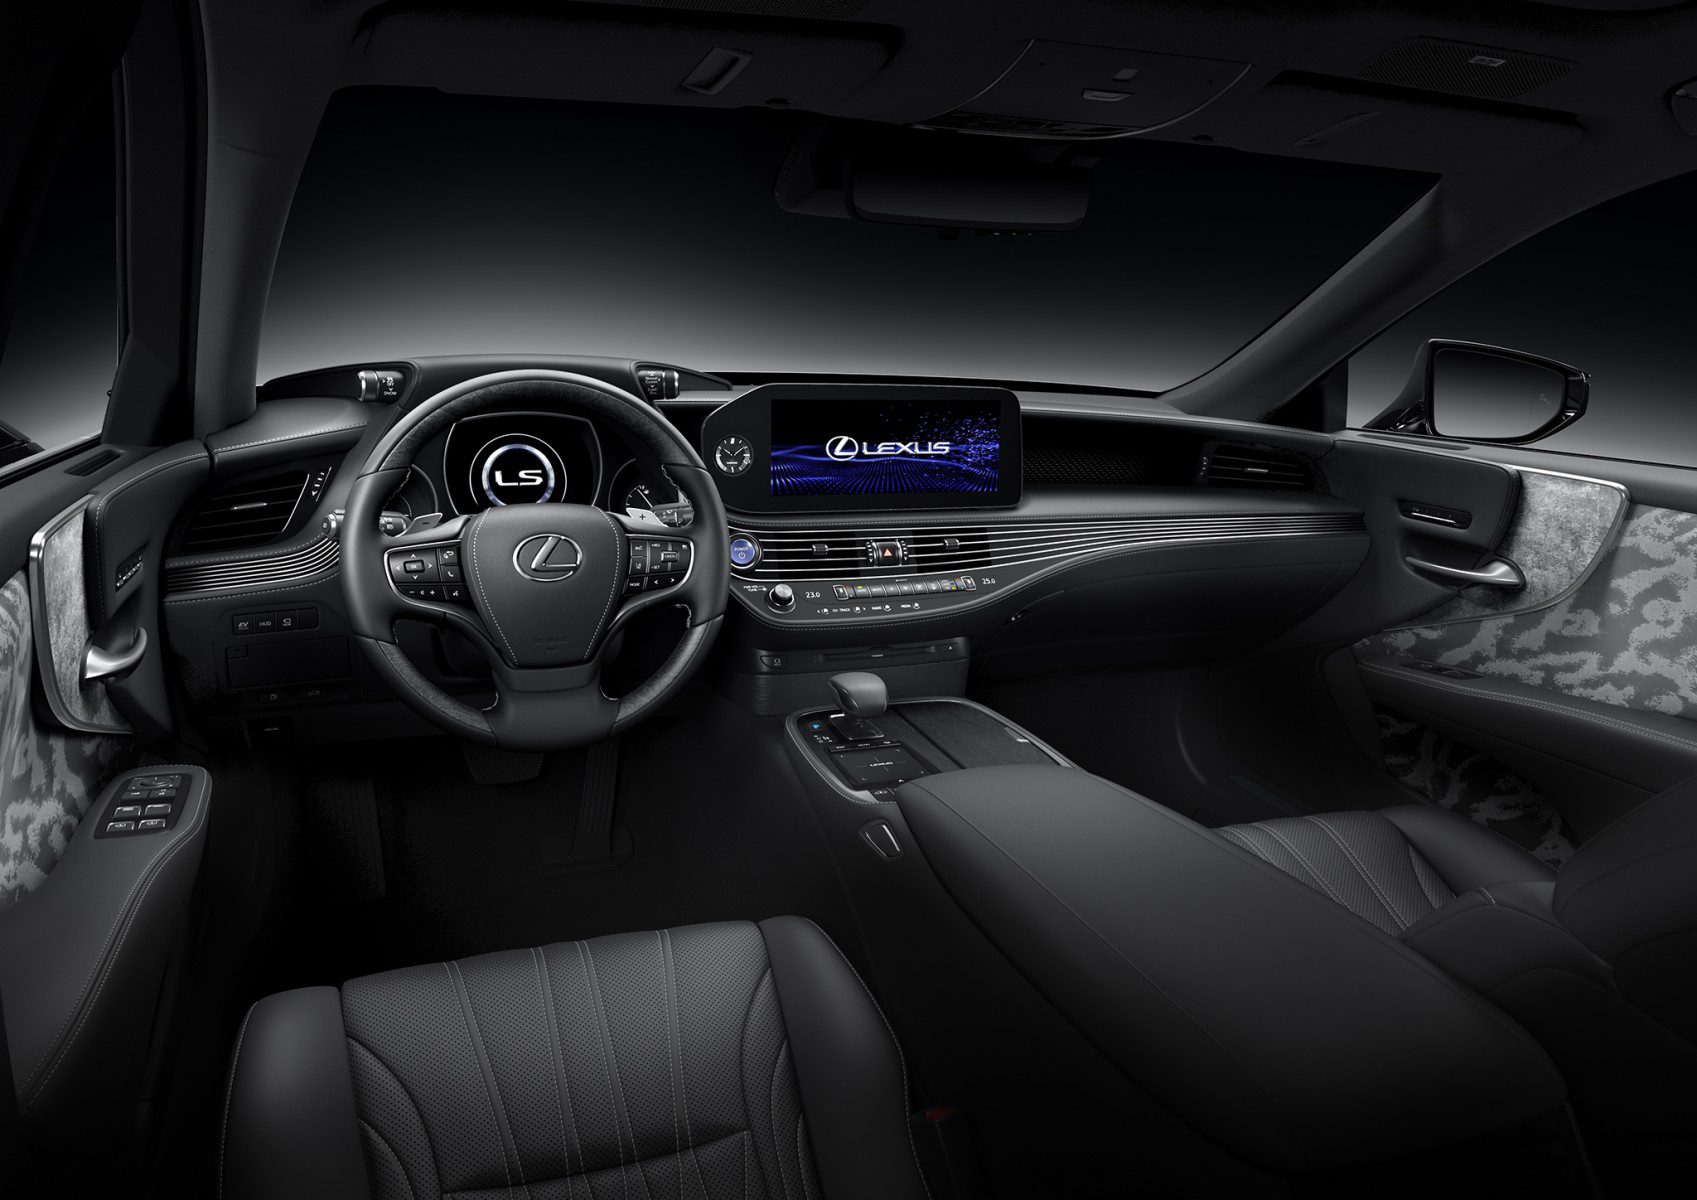 Lexus LS 430 interior - Cockpit